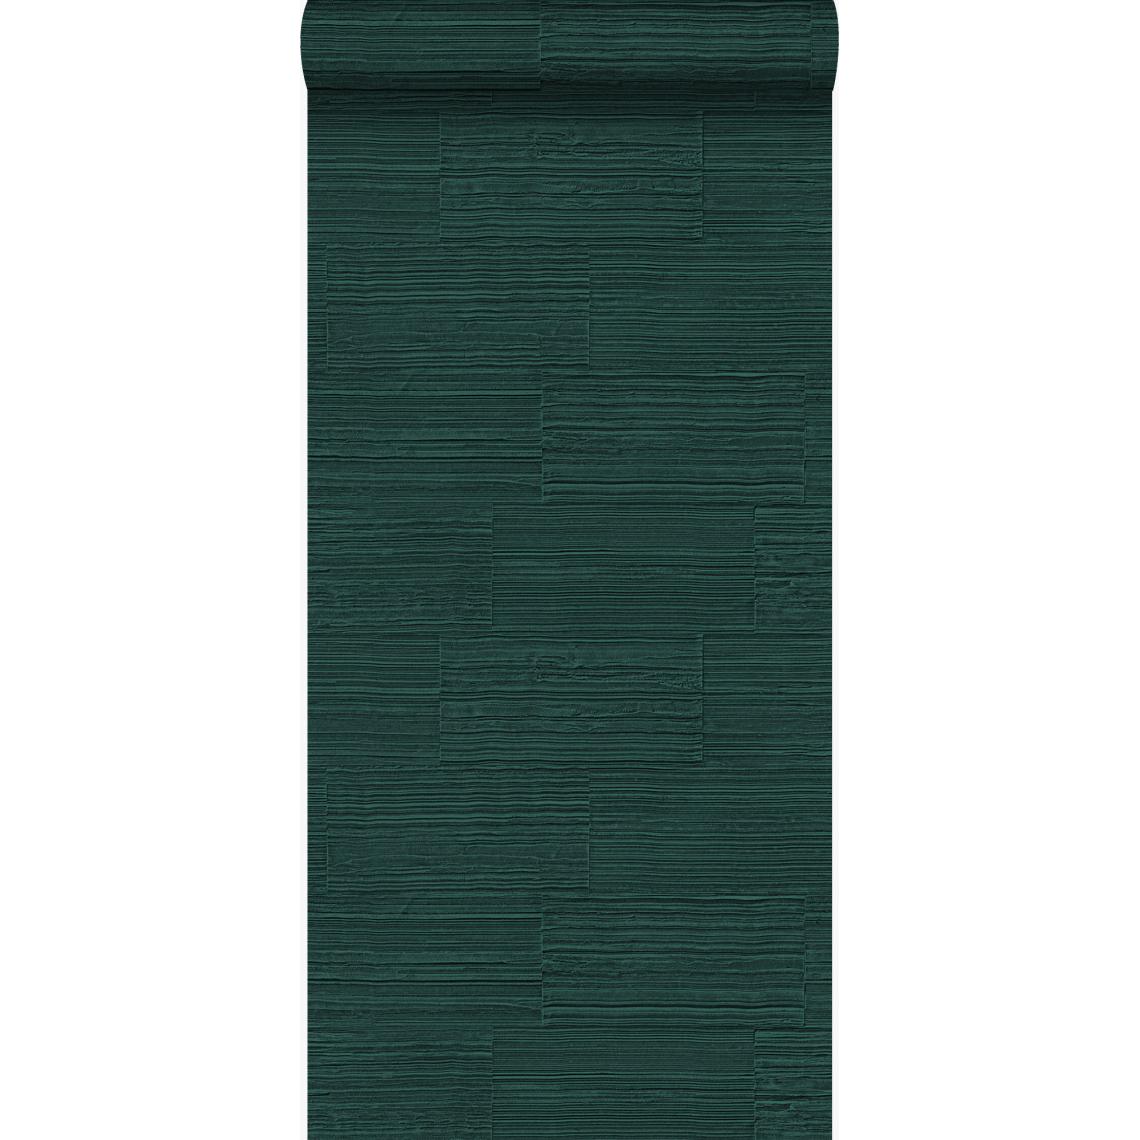 Origin - Origin papier peint pierre naturelle brute rétro en appareil de panneresses vert émeraude - 347578 - 53 cm x 10.05 m - Papier peint